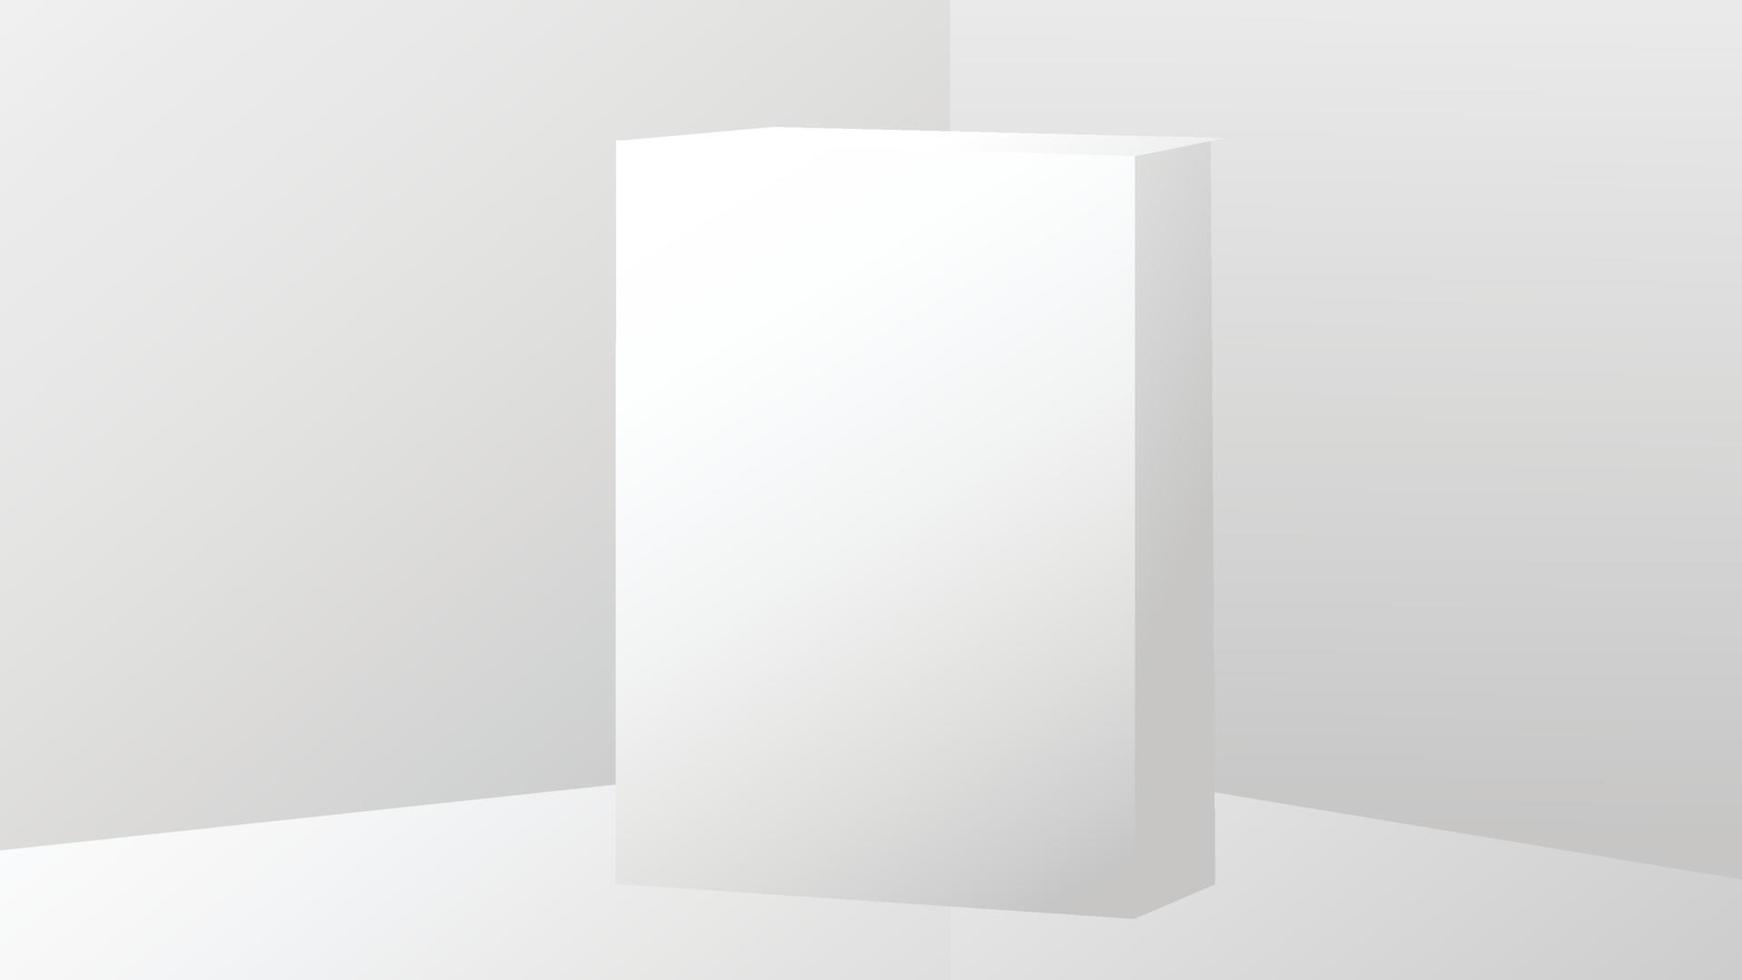 maquetes de pequenas caixas de papelão branco. ilustração vetorial vetor